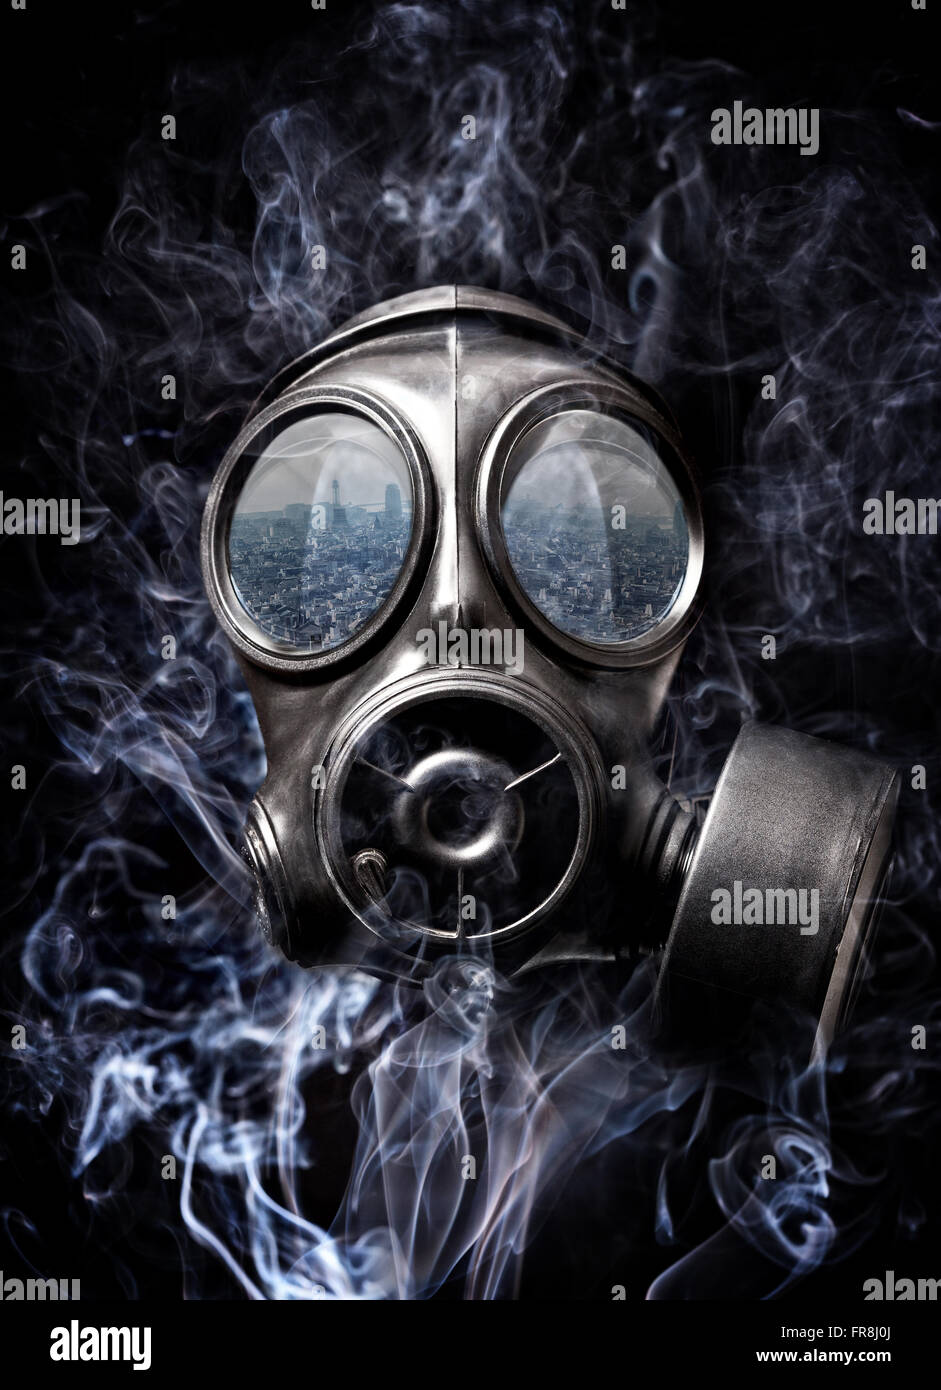 gas mask and smoke background Stock Photo - Alamy